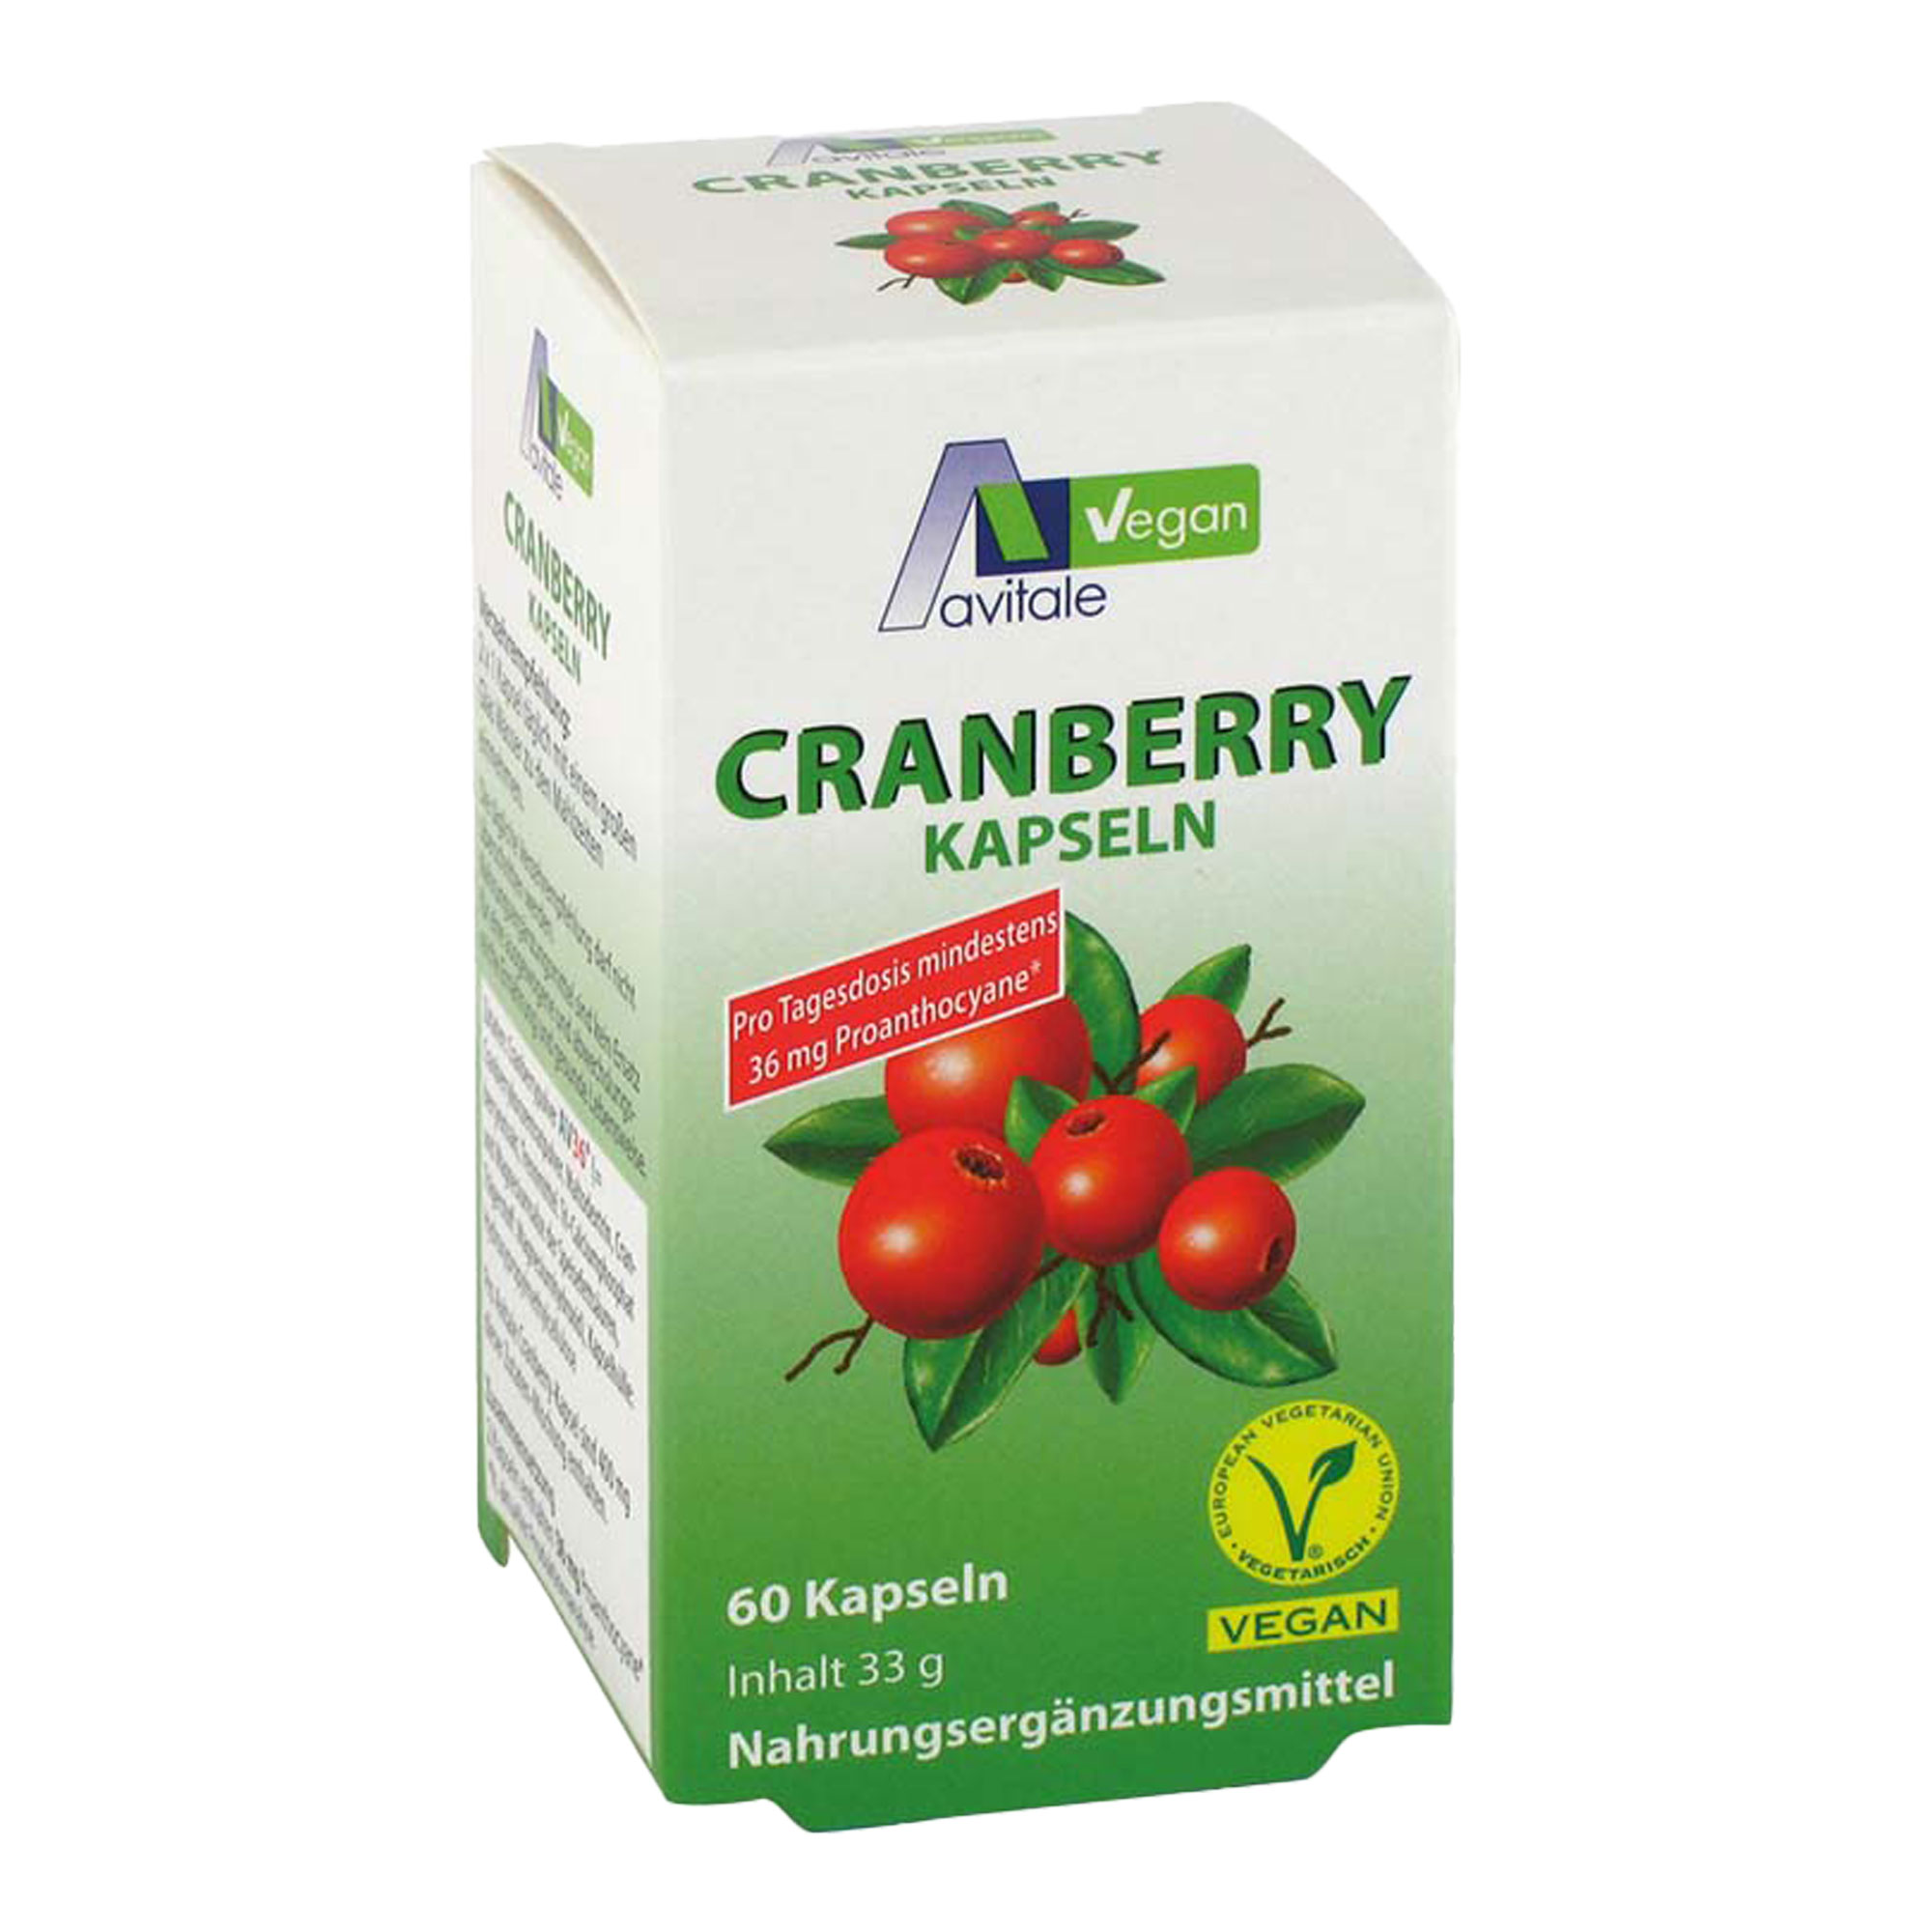 Veganes Nahrungsergänzungsmittel mit Cranberrypulver.